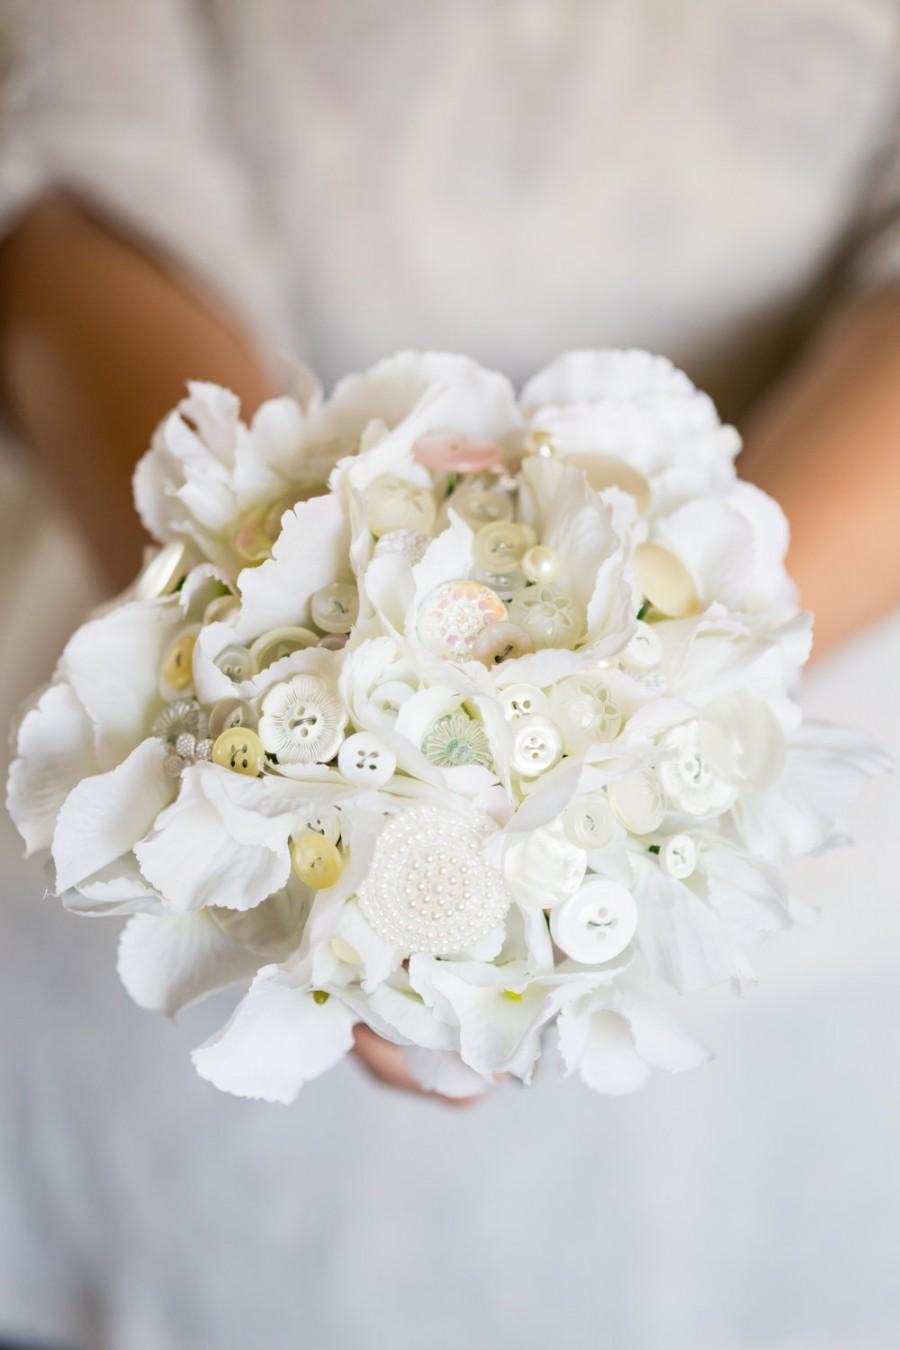 Wedding - White flower and button bouquet, bride, bridesmaids or flower girls